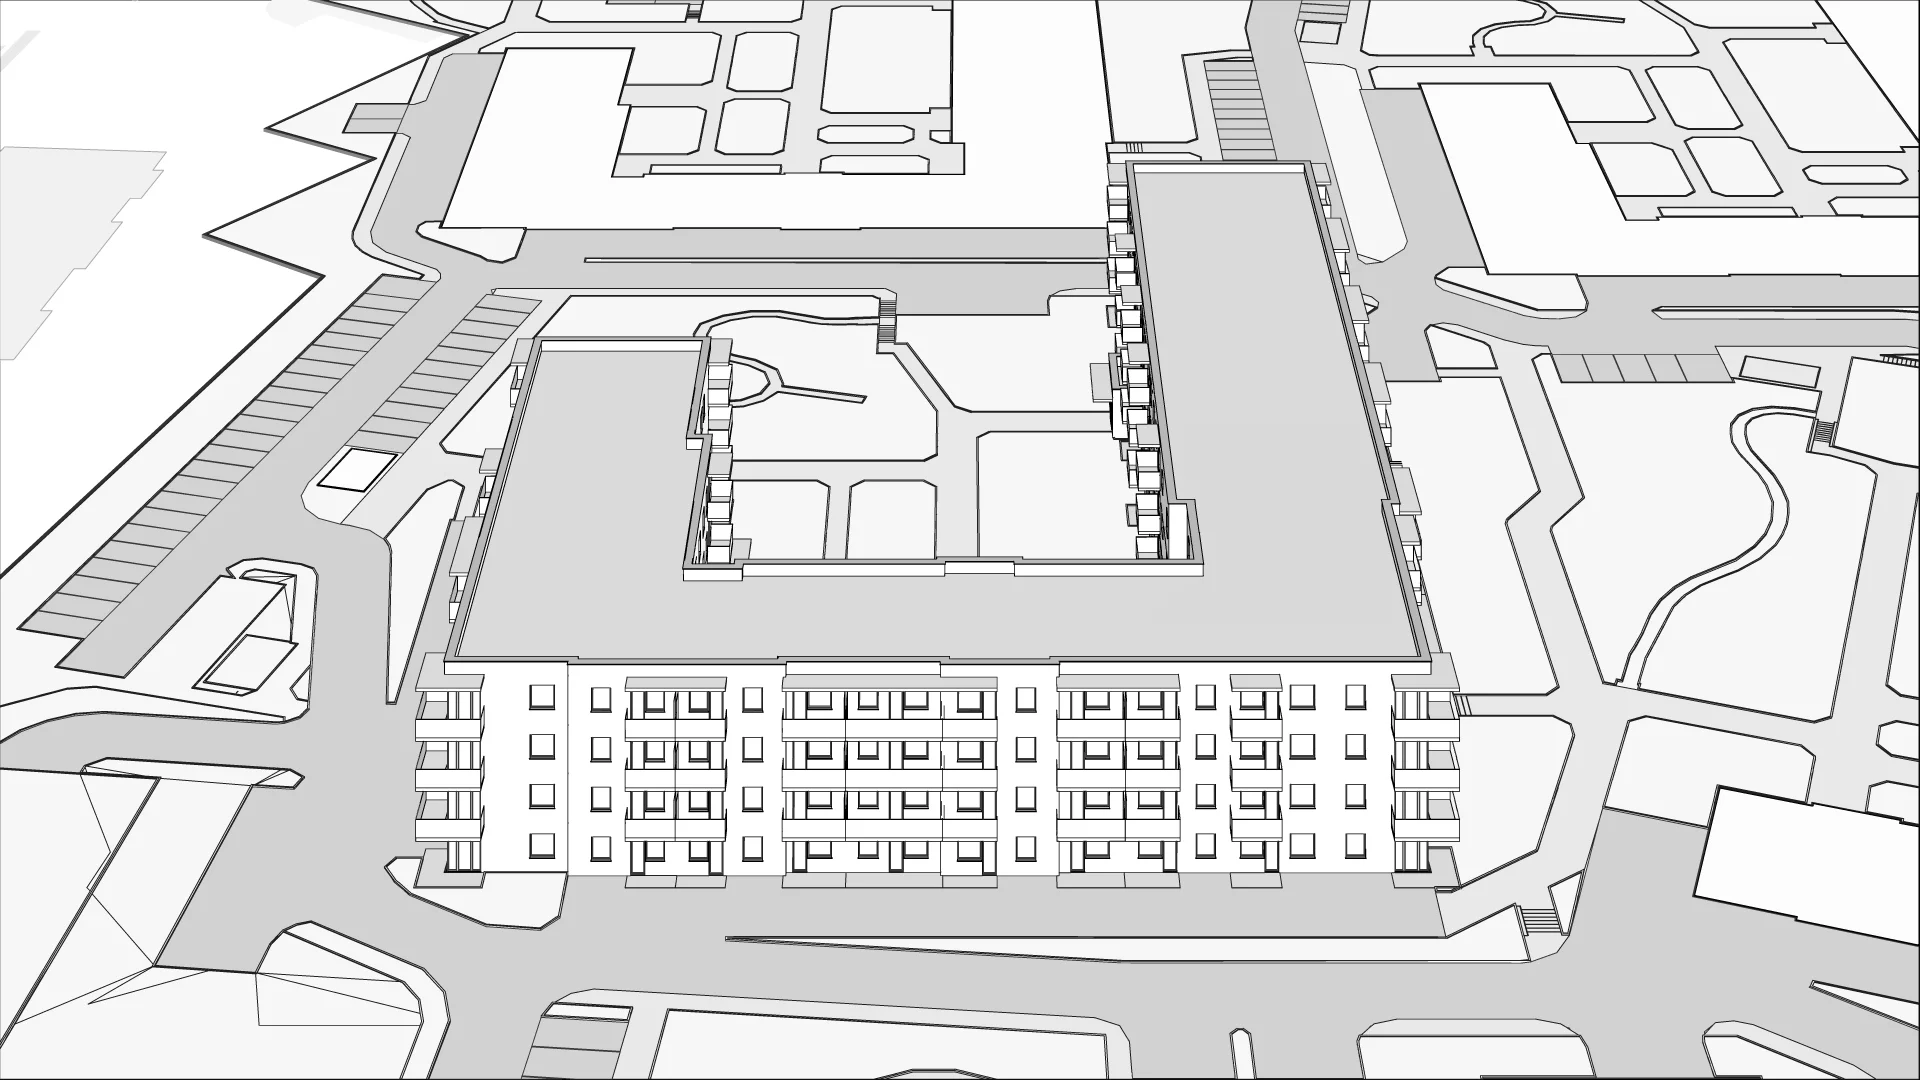 Wirtualna makieta 3D inwestycji Cukrownia Apartamenty - Etap III